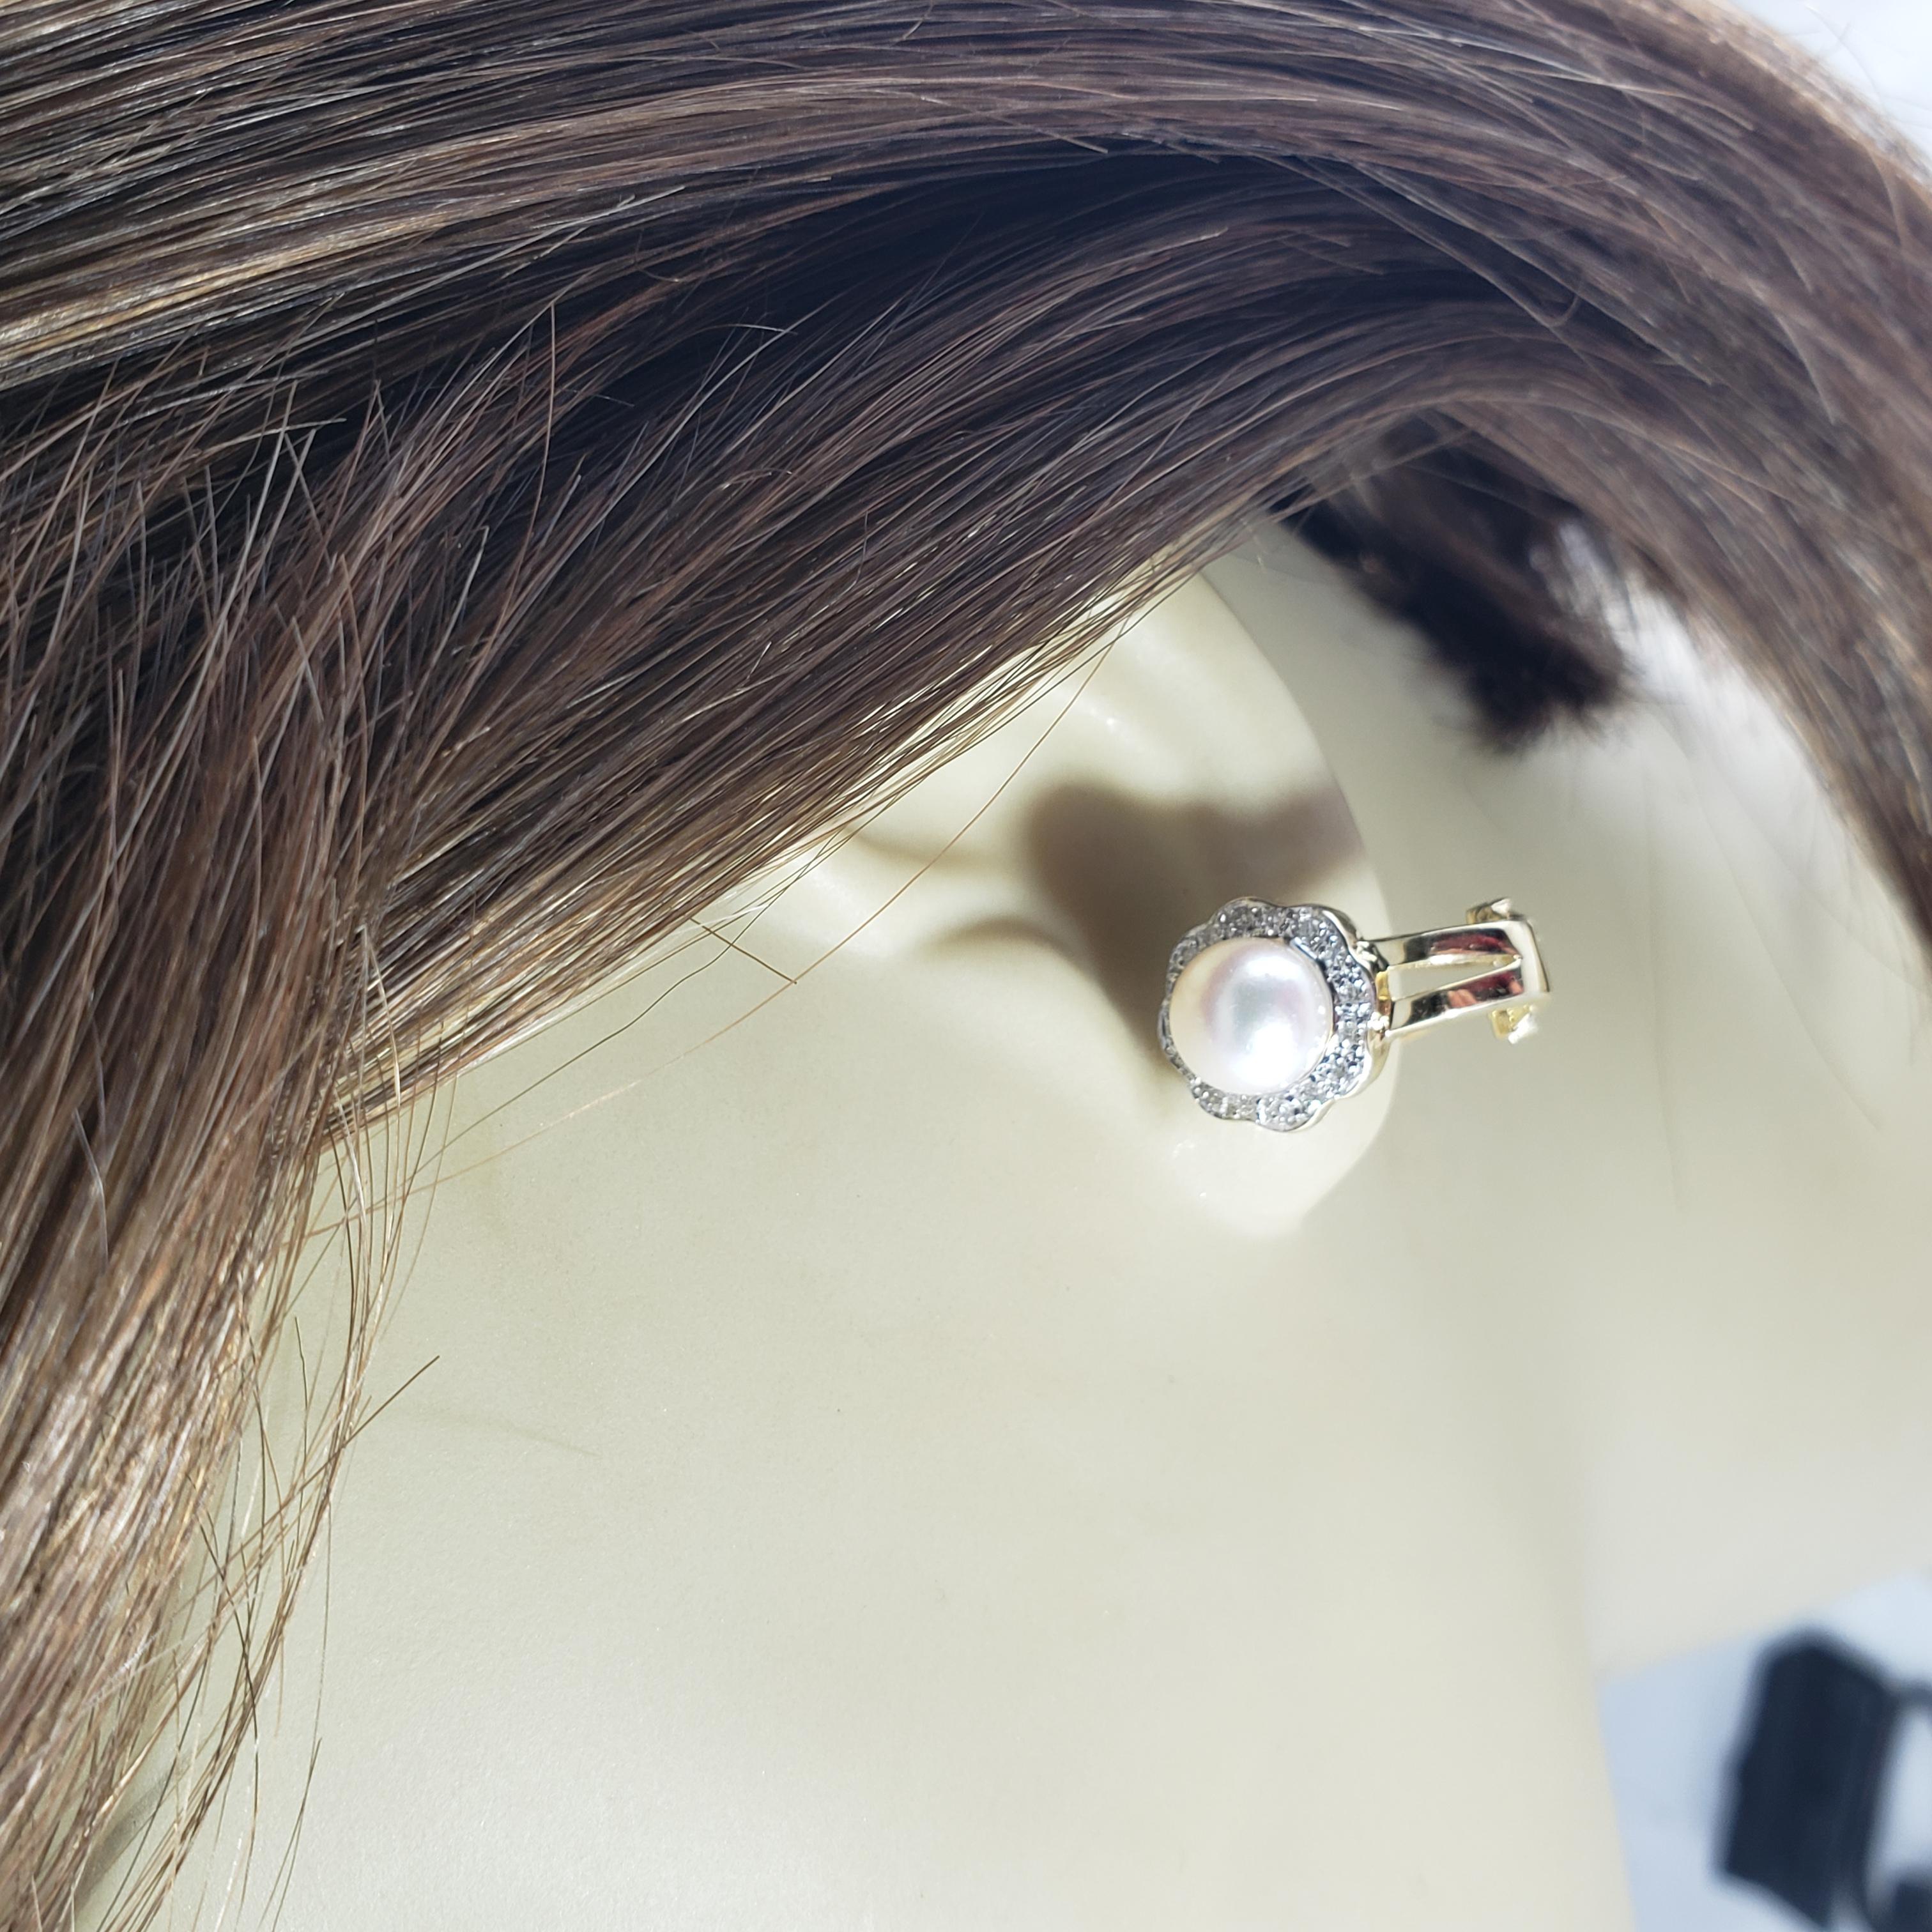 Vintage Boucles d'oreilles en or jaune 14 carats avec perles et diamants-...

Ces superbes boucles d'oreilles comportent chacune une perle ronde de 7 mm, rehaussée de 16 diamants ronds de taille brillant sertis dans de l'or jaune classique